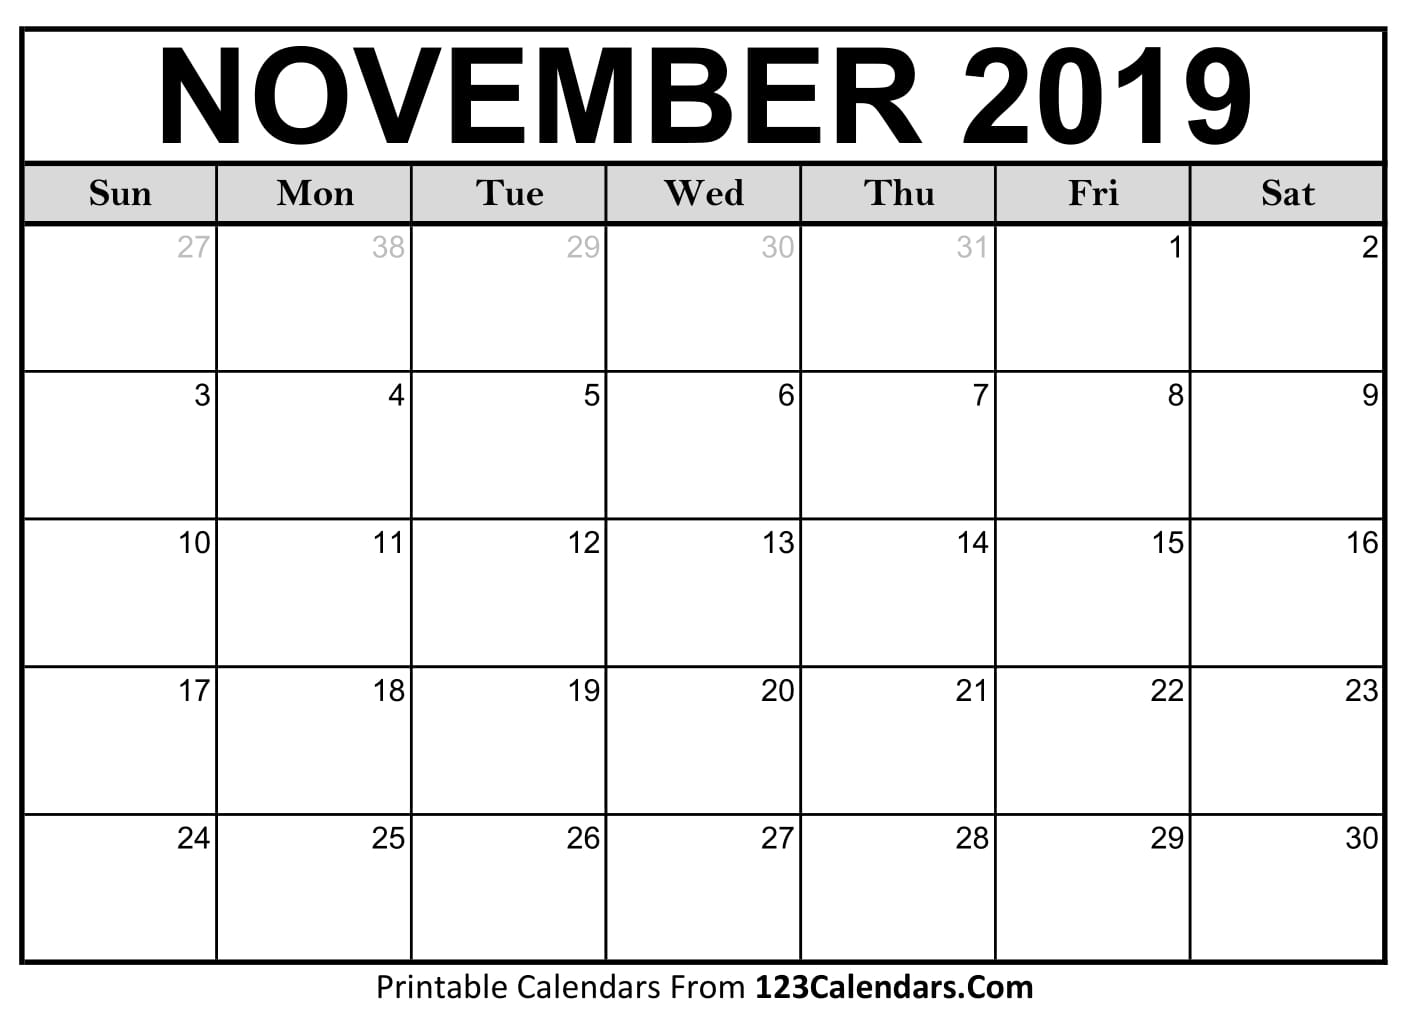 November 2019 Printable Calendar 123Calendars com